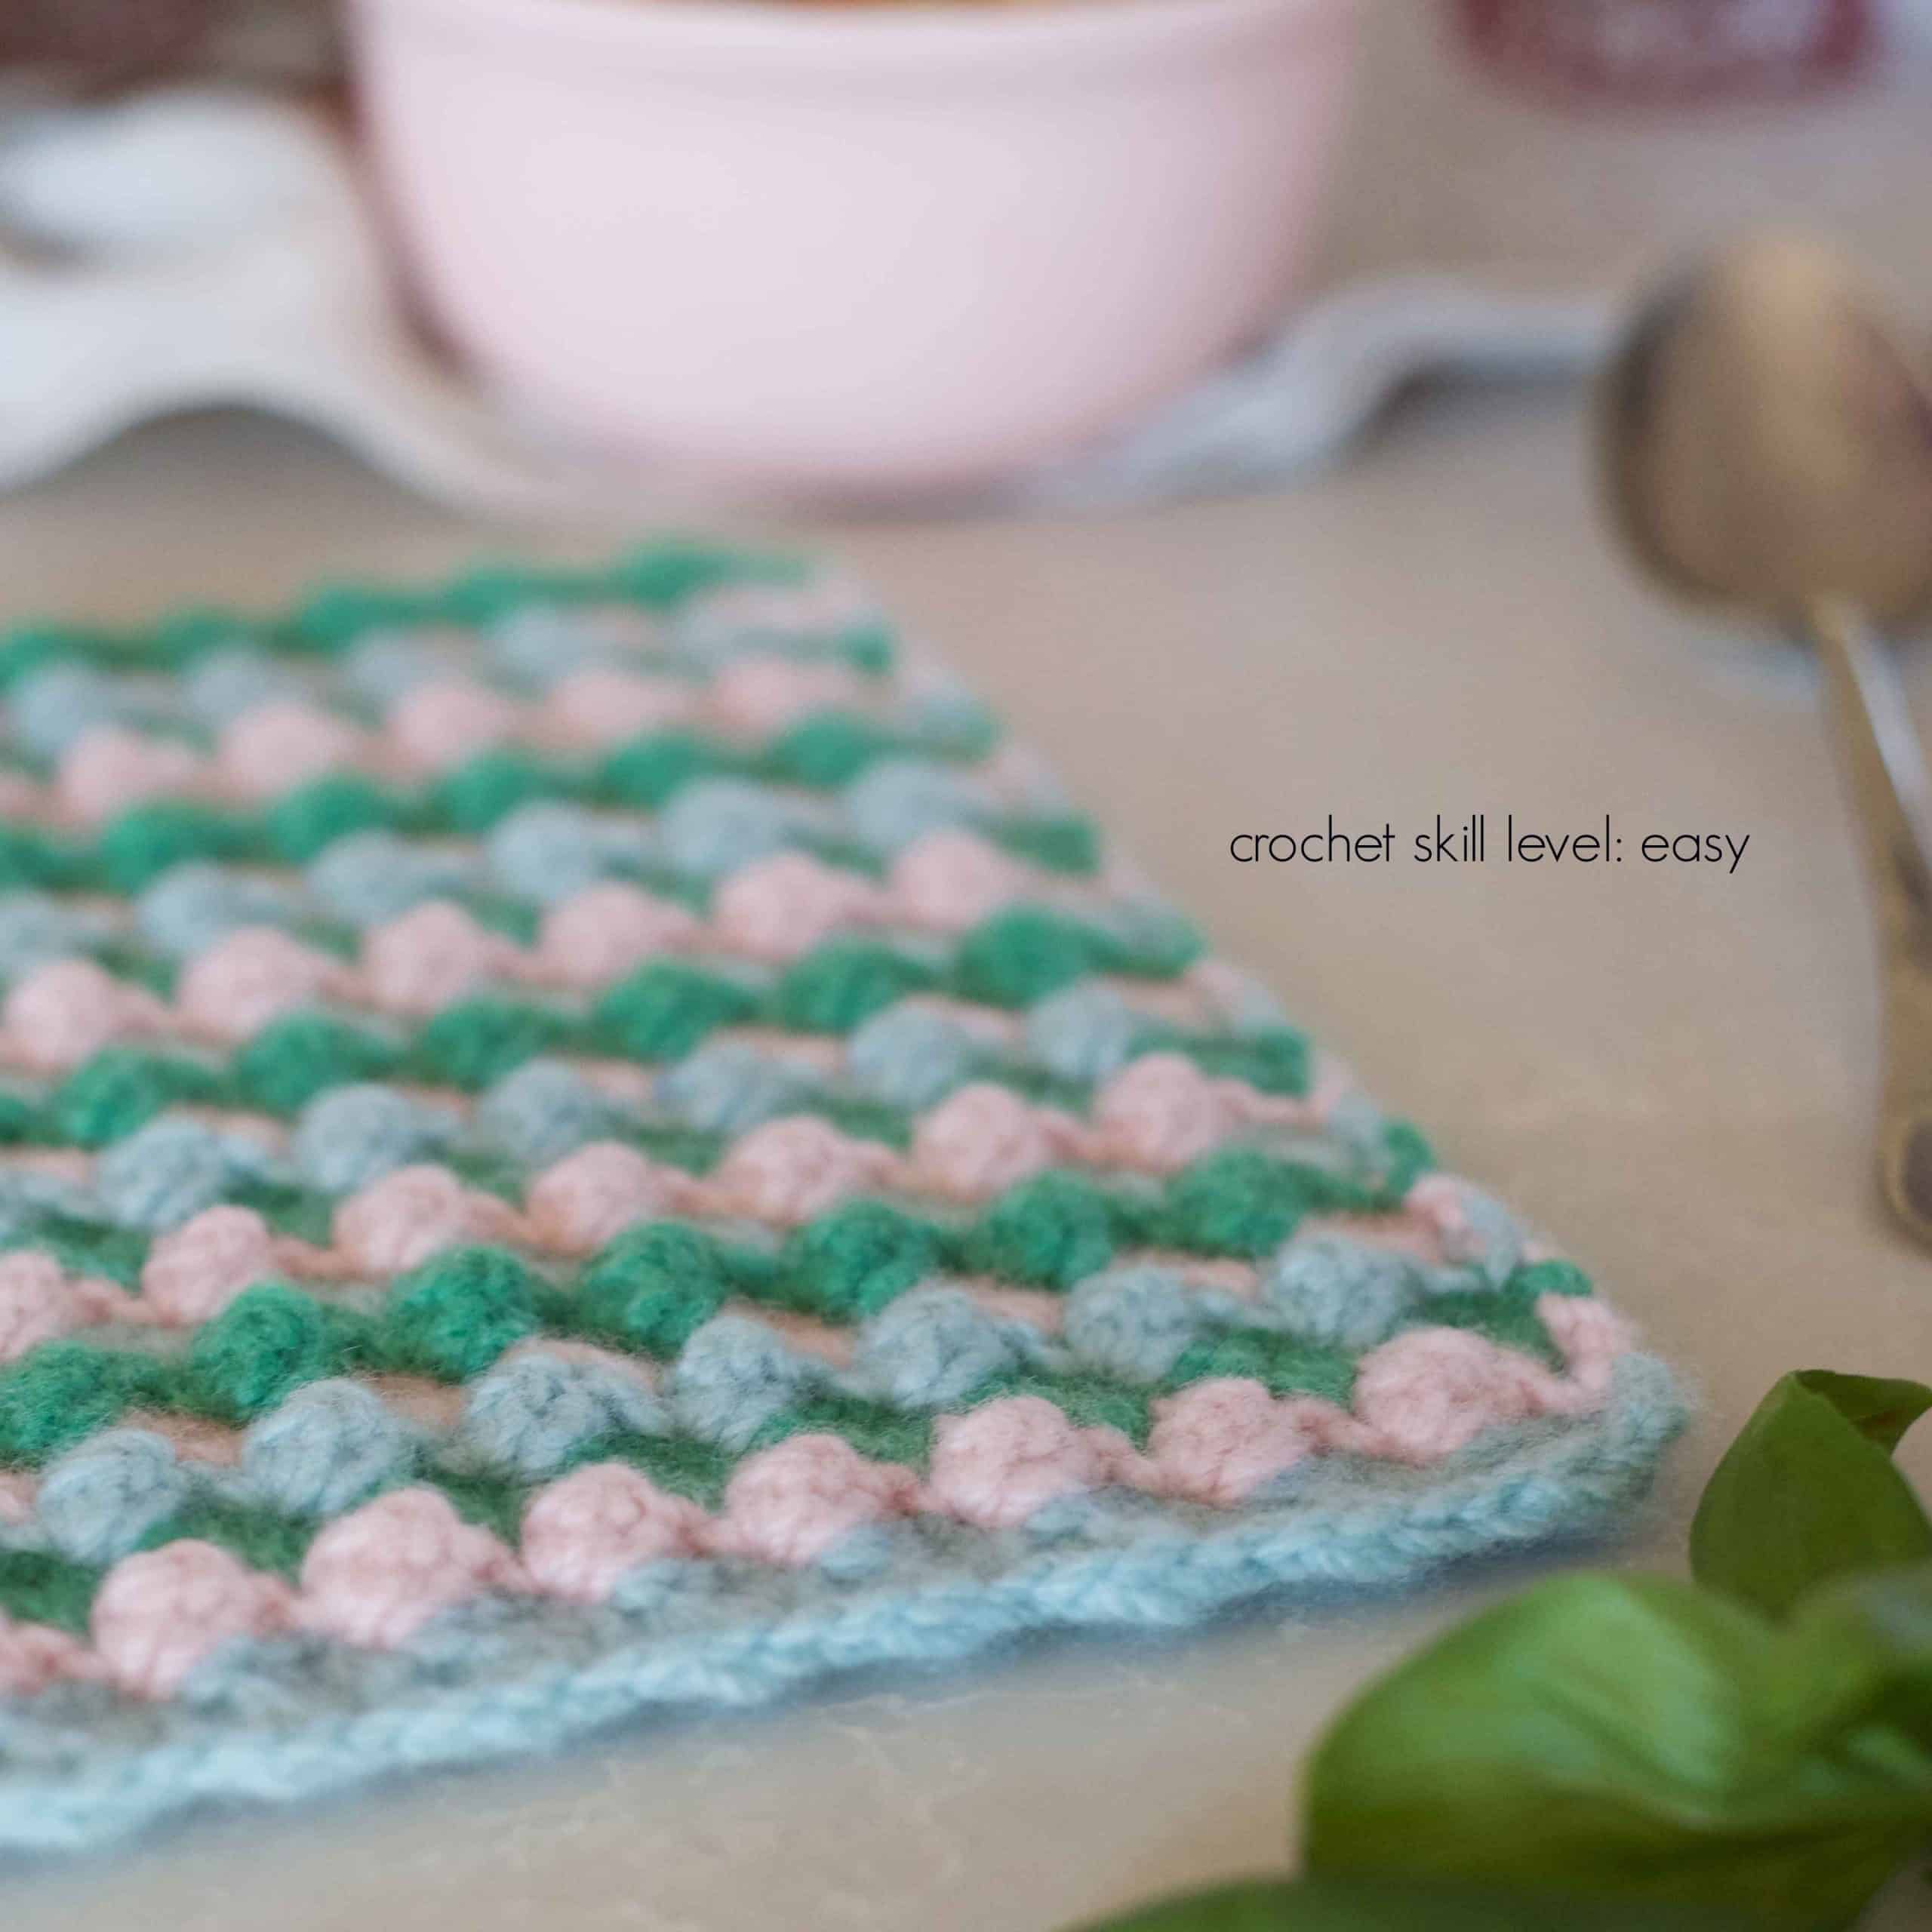 Crochet Kit / DIY Crochet Kit Dishcloth Kit / Simple Crochet Beginner Kit /  Eco-friendly Sustainable Recycled Gift for Crocheter 